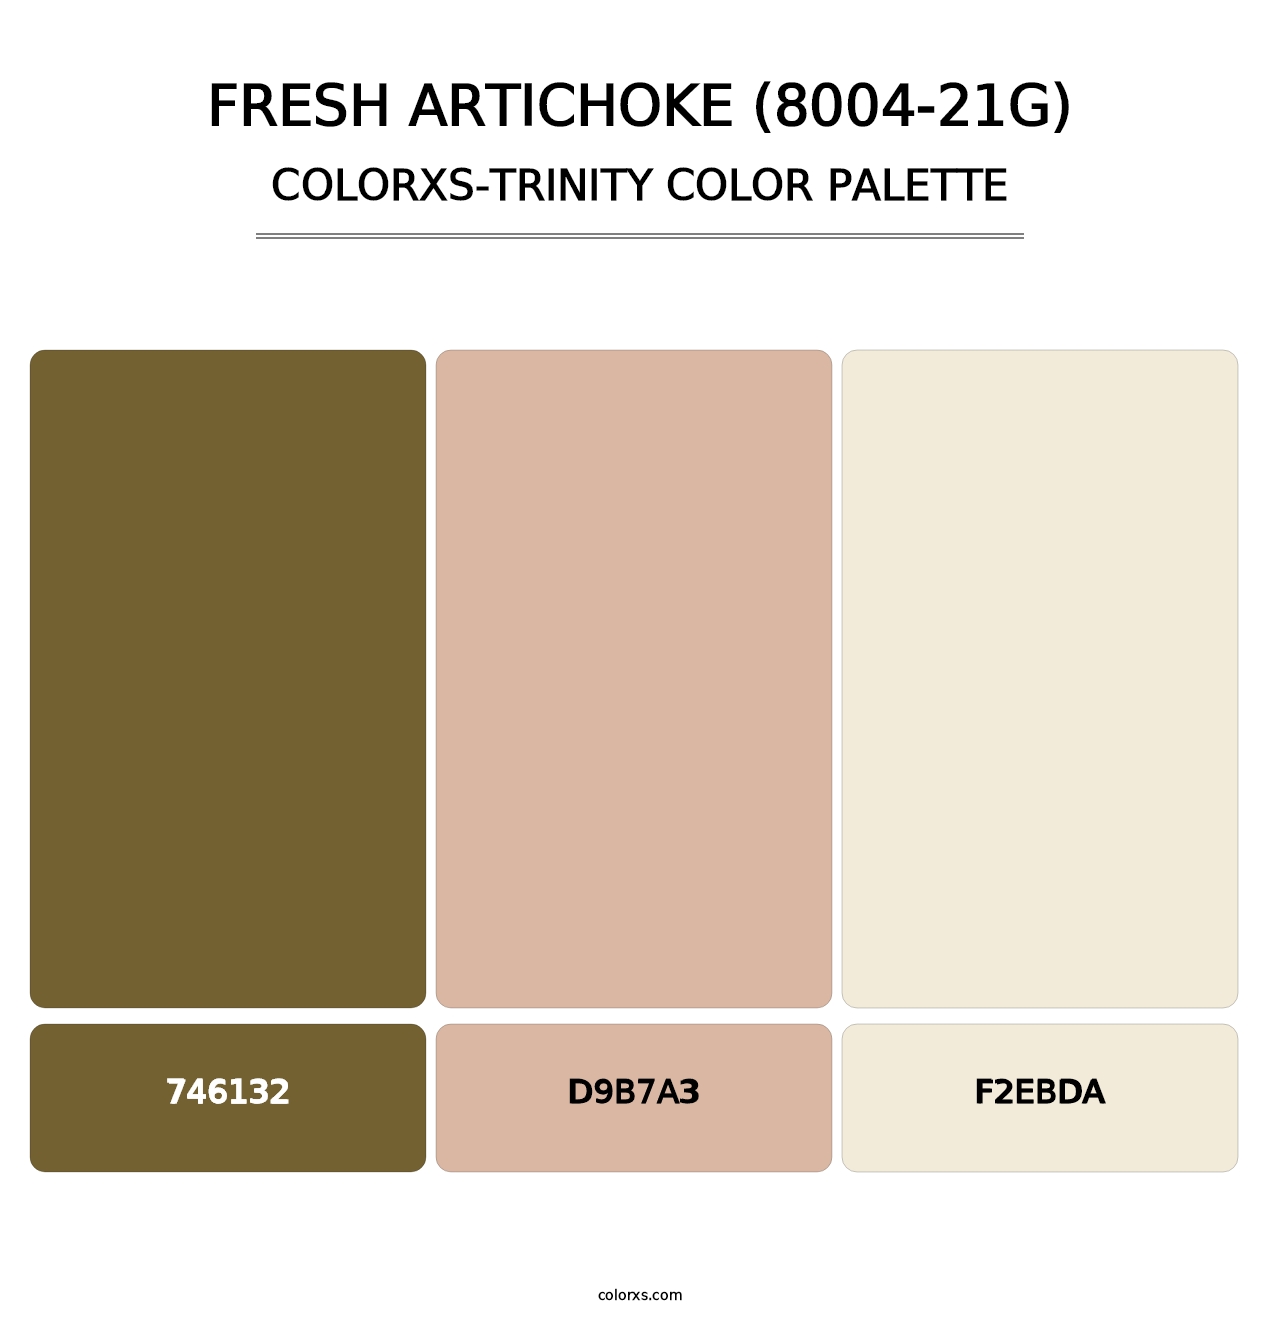 Fresh Artichoke (8004-21G) - Colorxs Trinity Palette